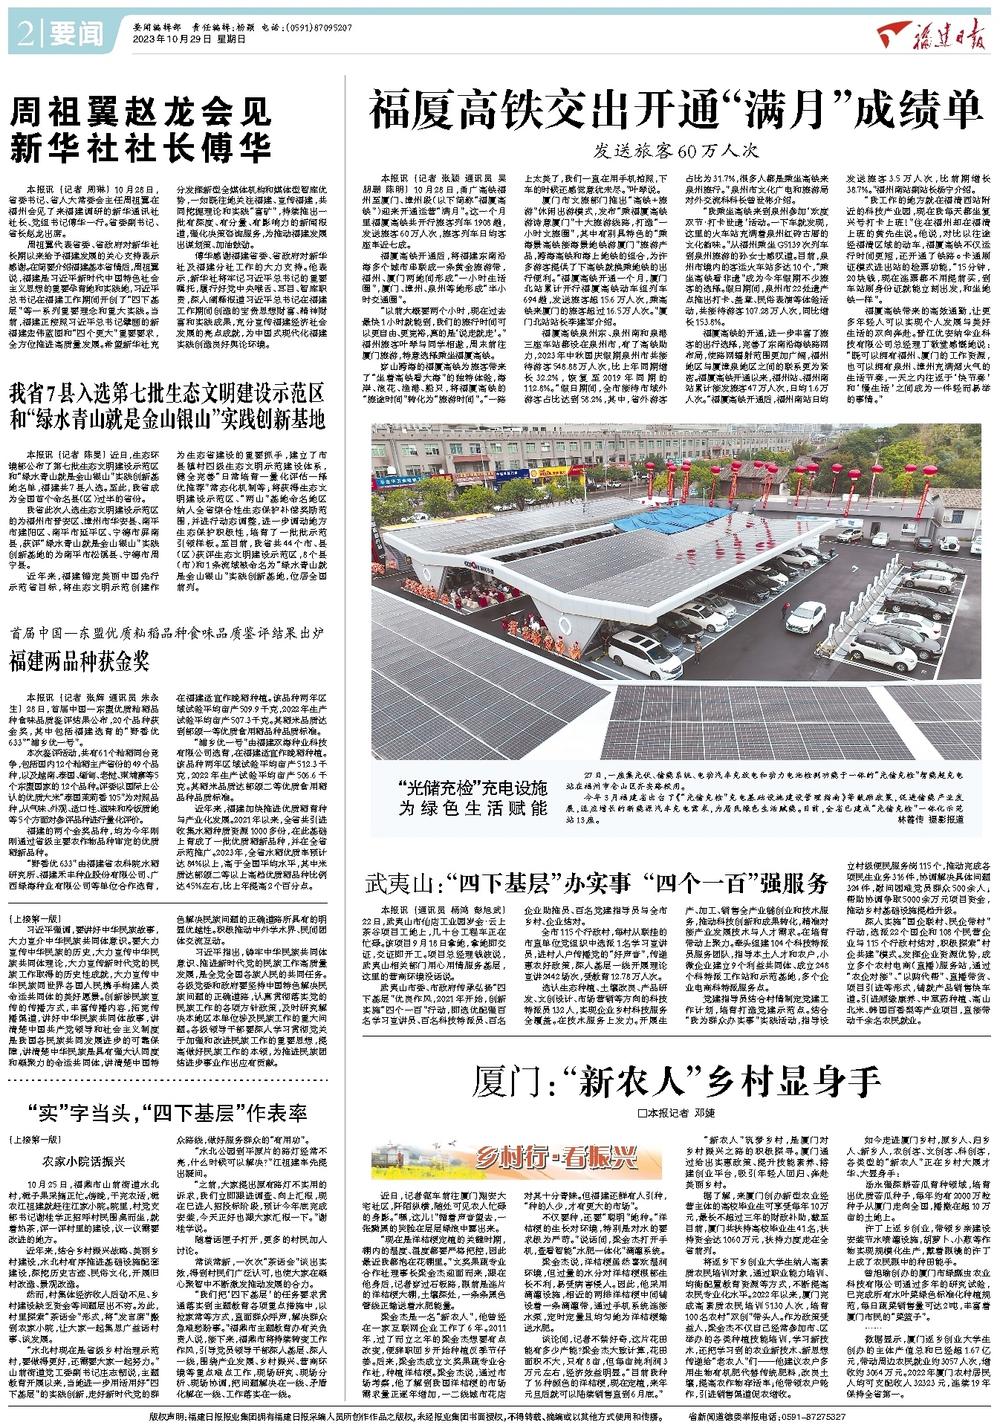 铸牢中华民族共同体意识推进新时代党的民族工作高质量发展- 福建日报数字报